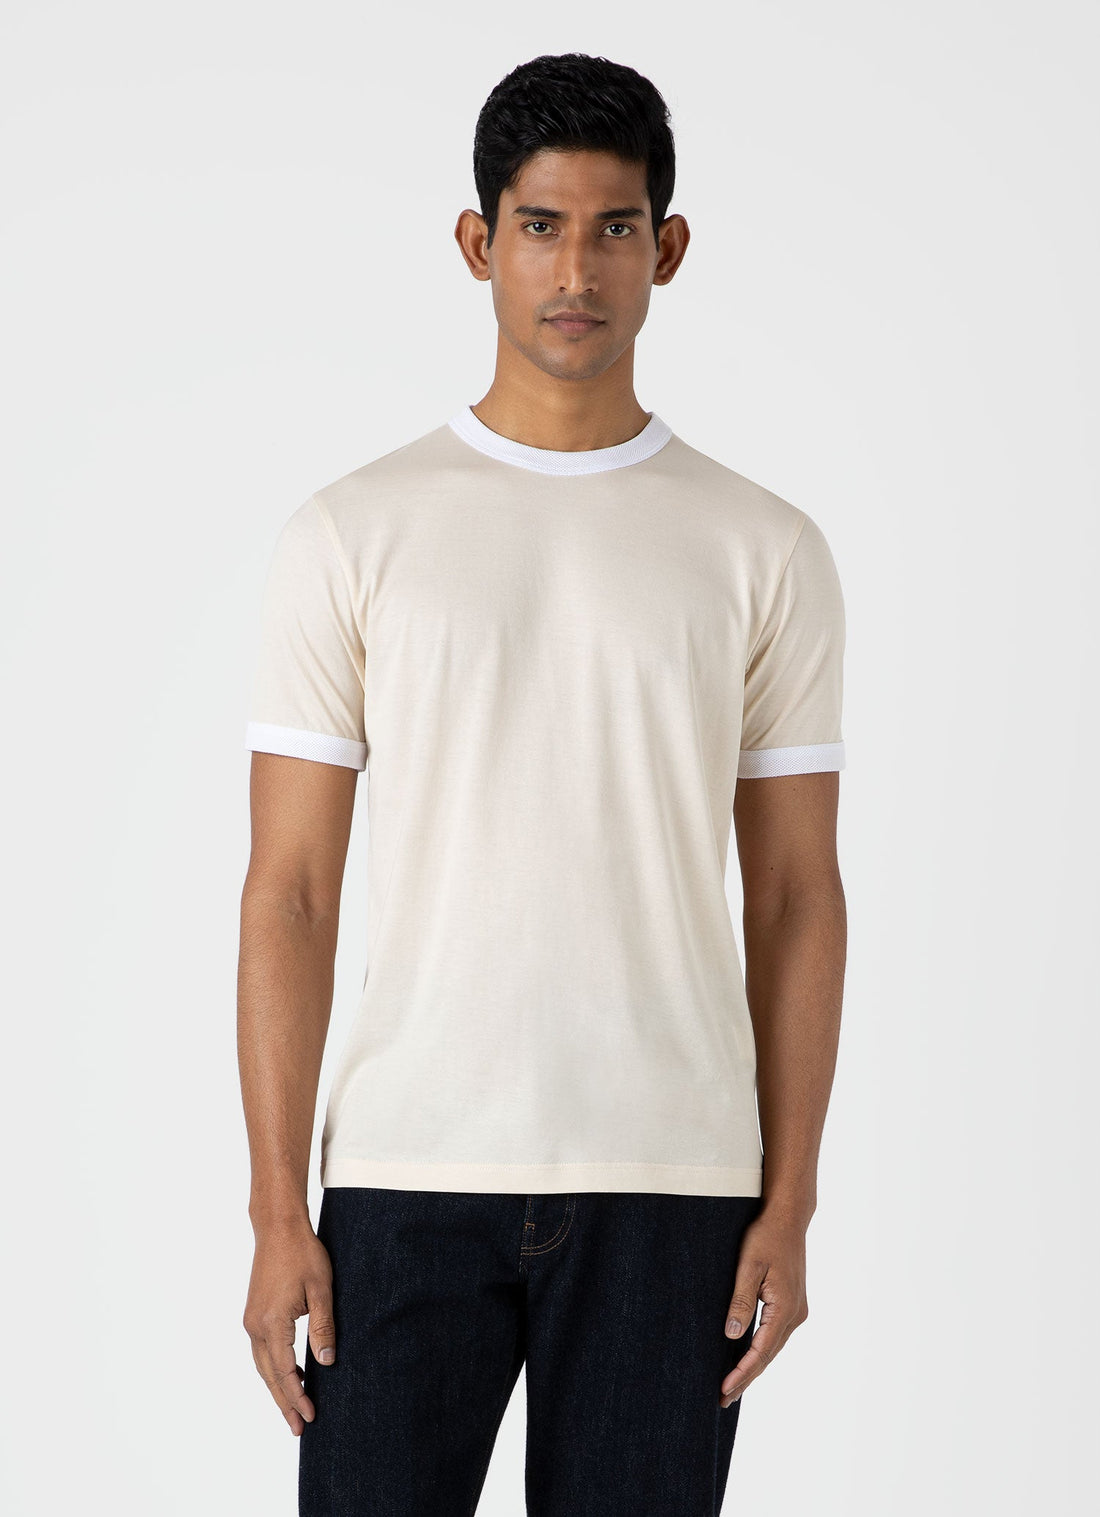 Men's Classic Ringer T-shirt in White